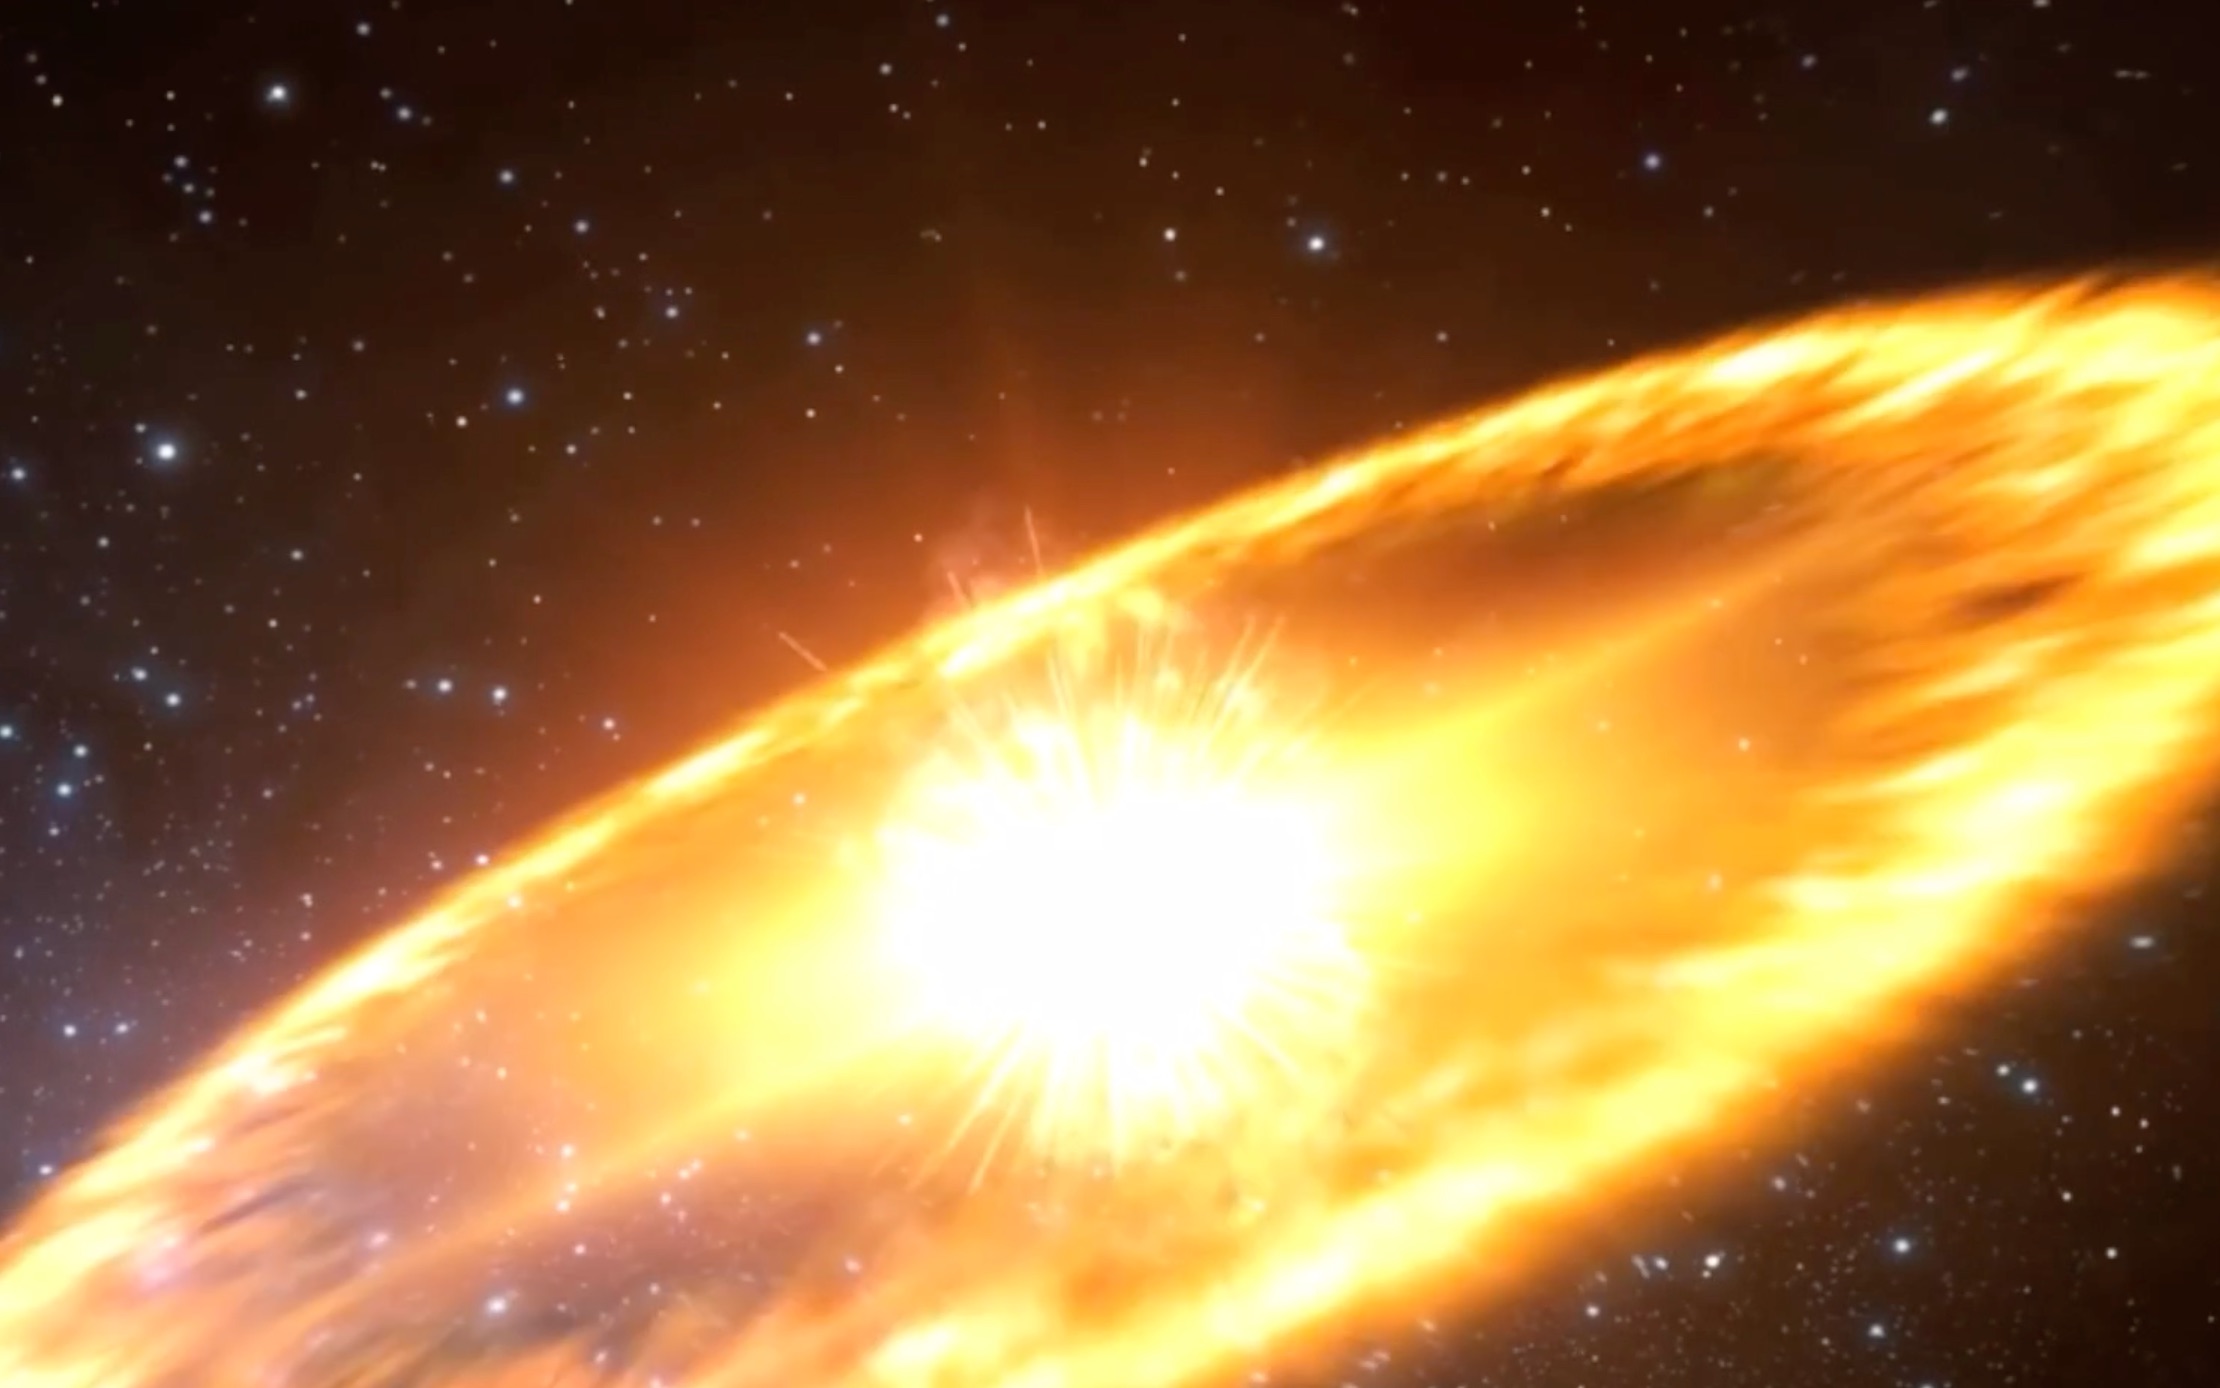 科学家探测到一颗超新星爆炸,画面犹如一幅彩色墨染艺术作品!